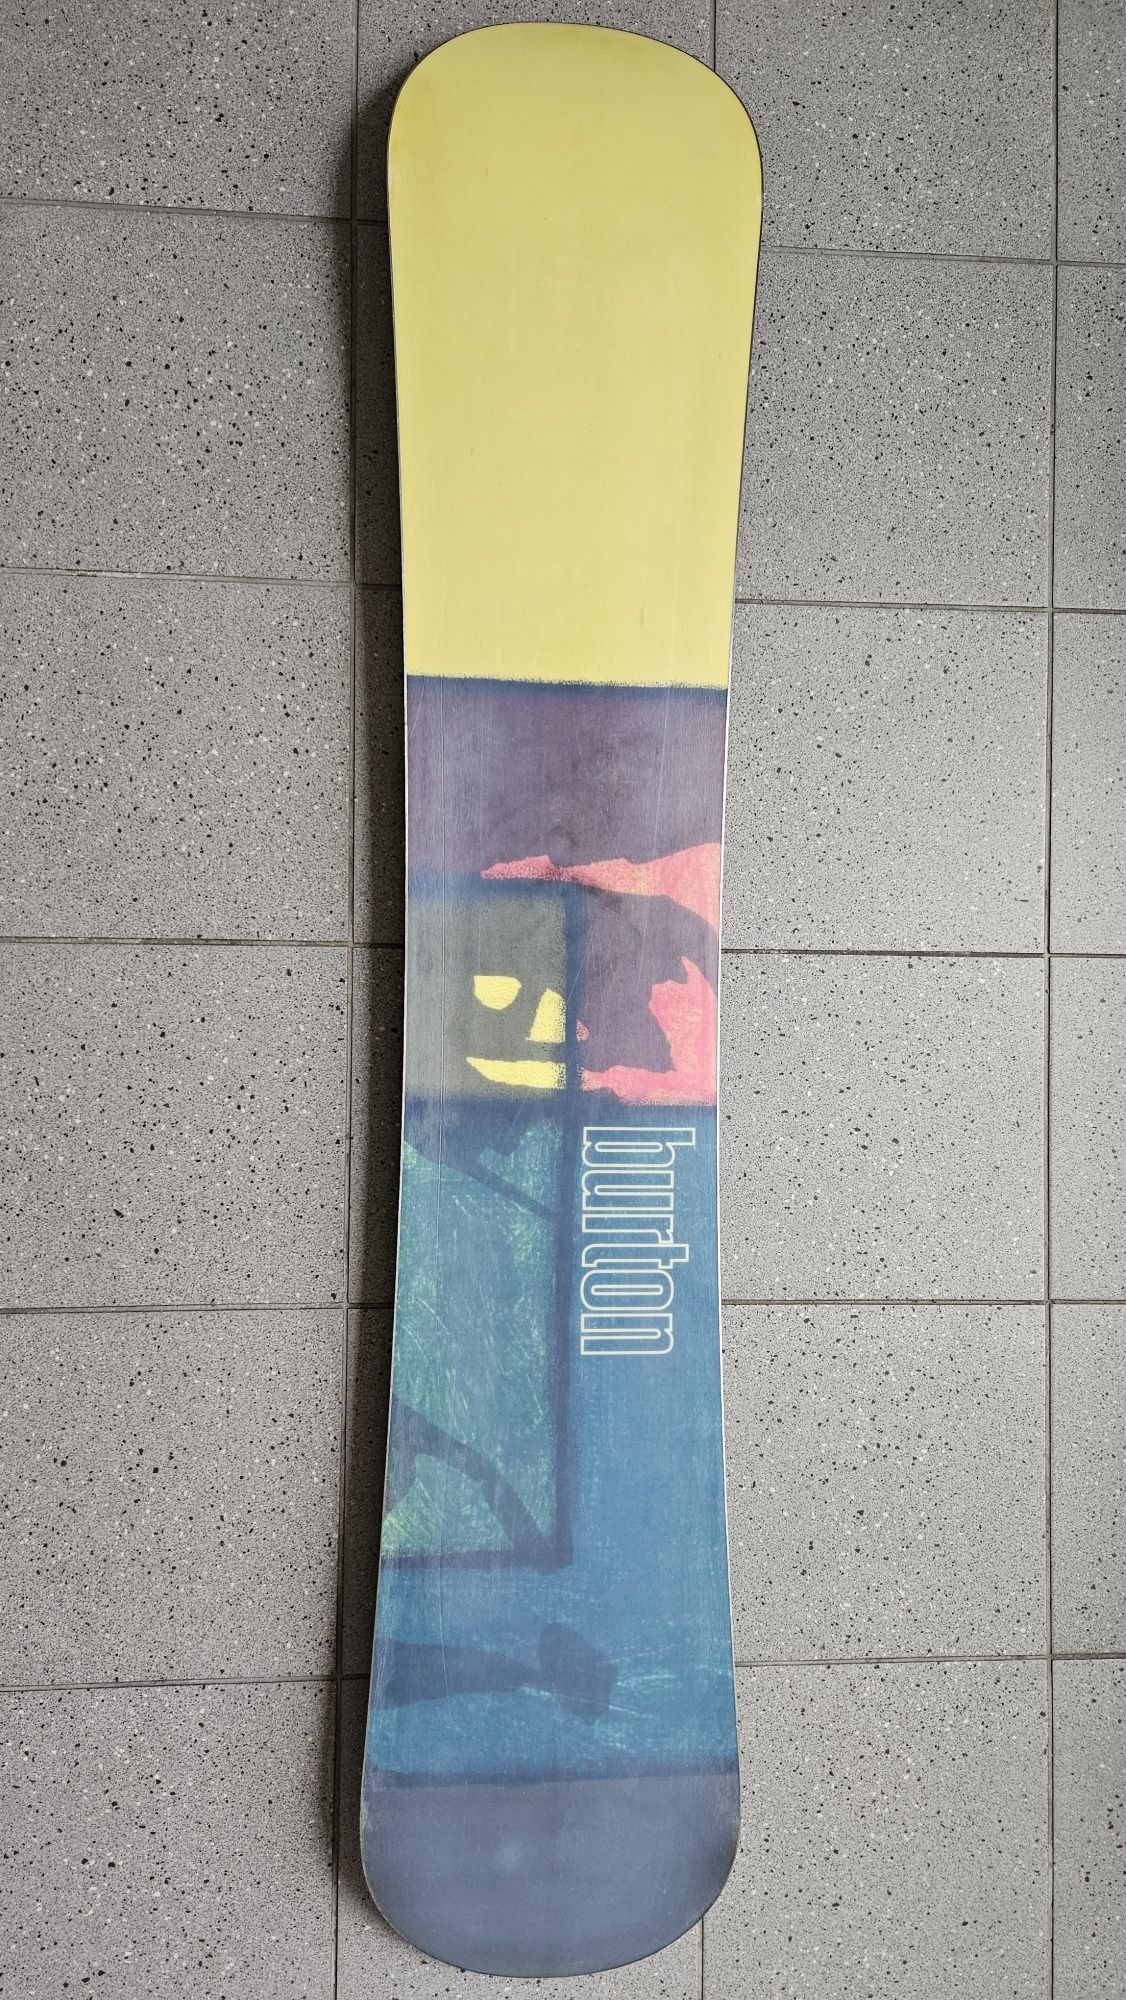 Burton Fluid 64 (164 cm) deska snowboard